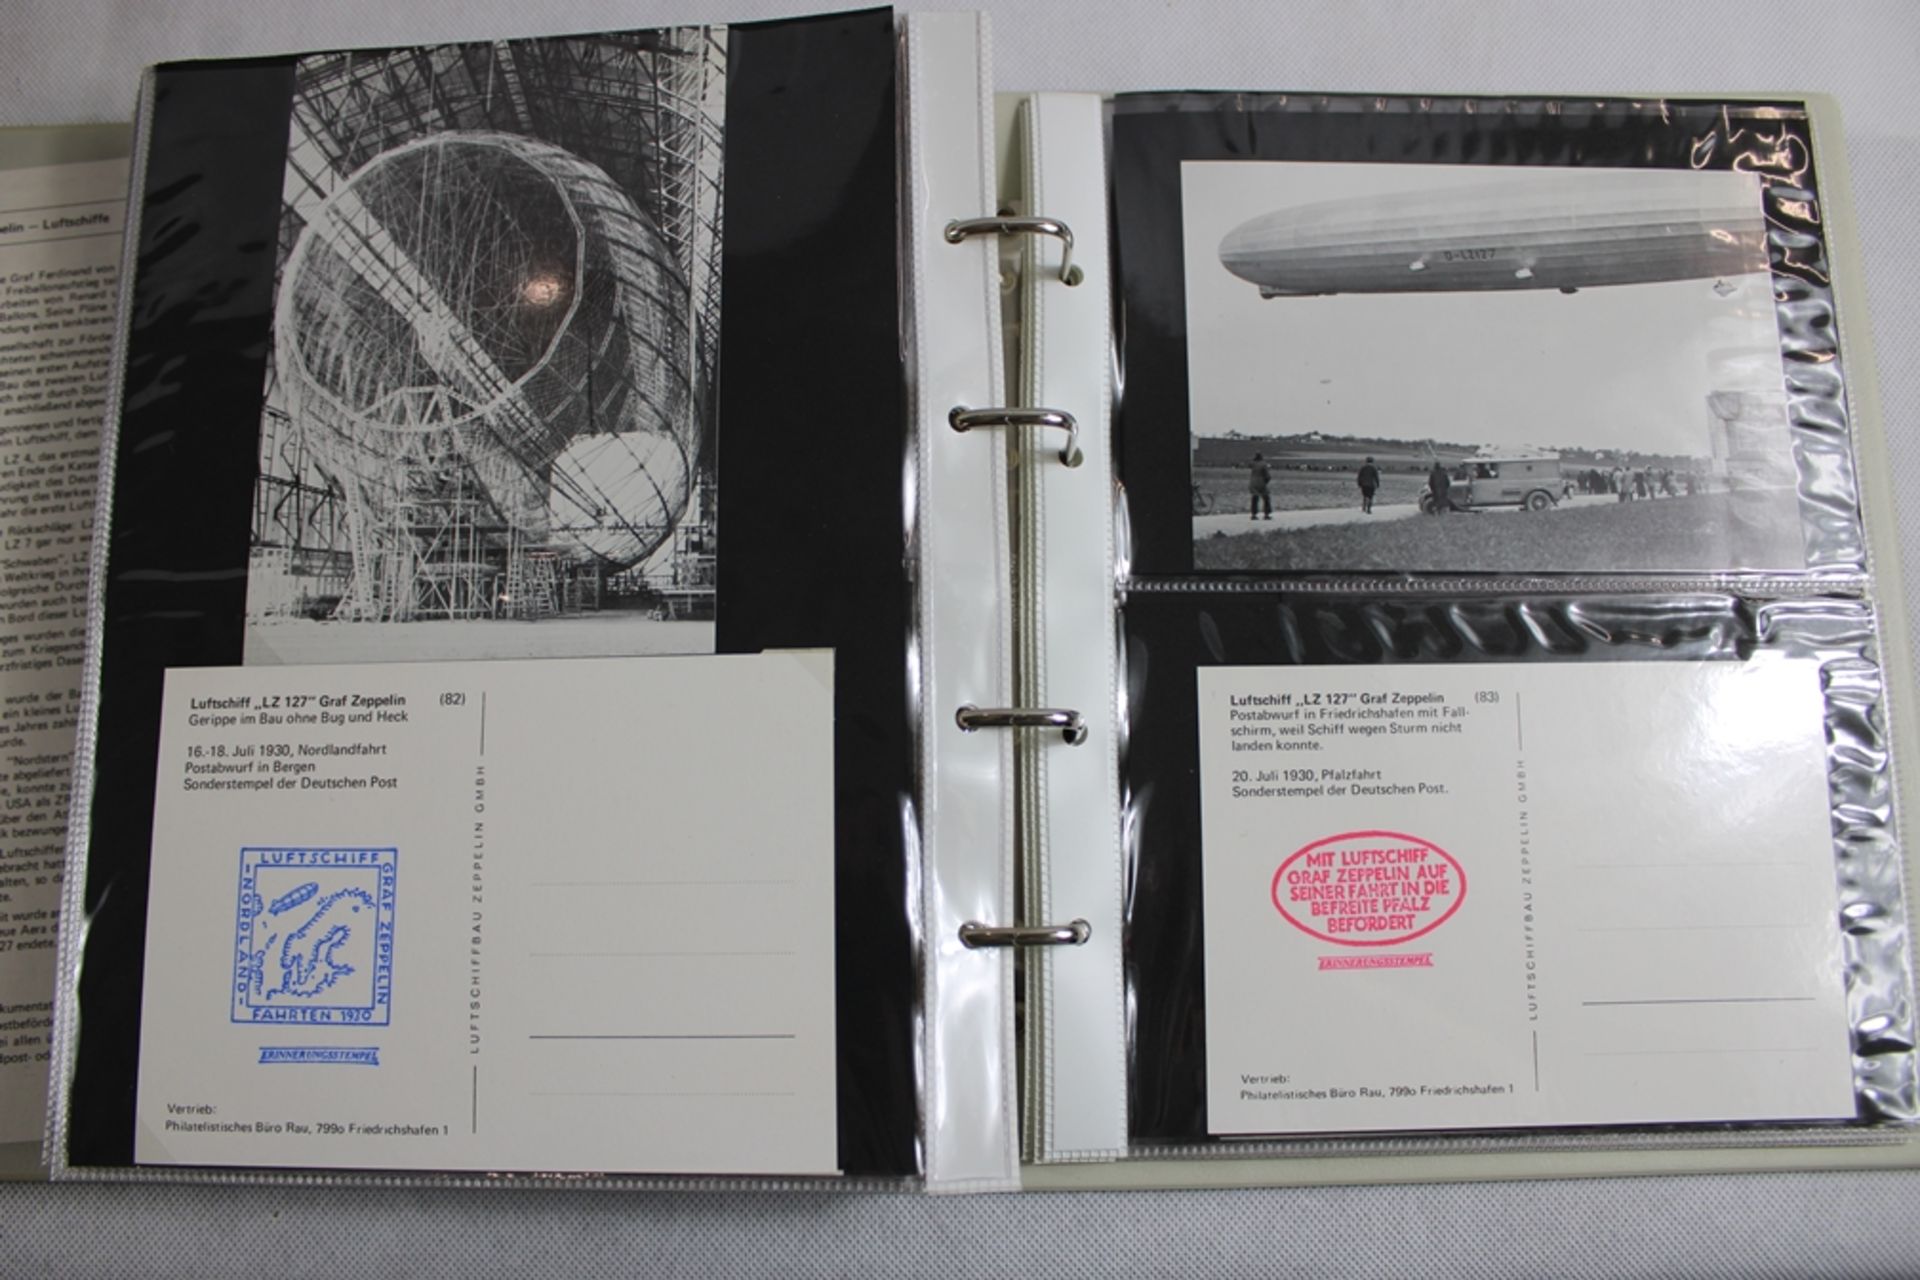 5 Alben mit über 1200 Postkarten Zeppelin Repro 80/90 er Jahre, vom Zeppelin Museum Friedrichshafen - Bild 7 aus 8